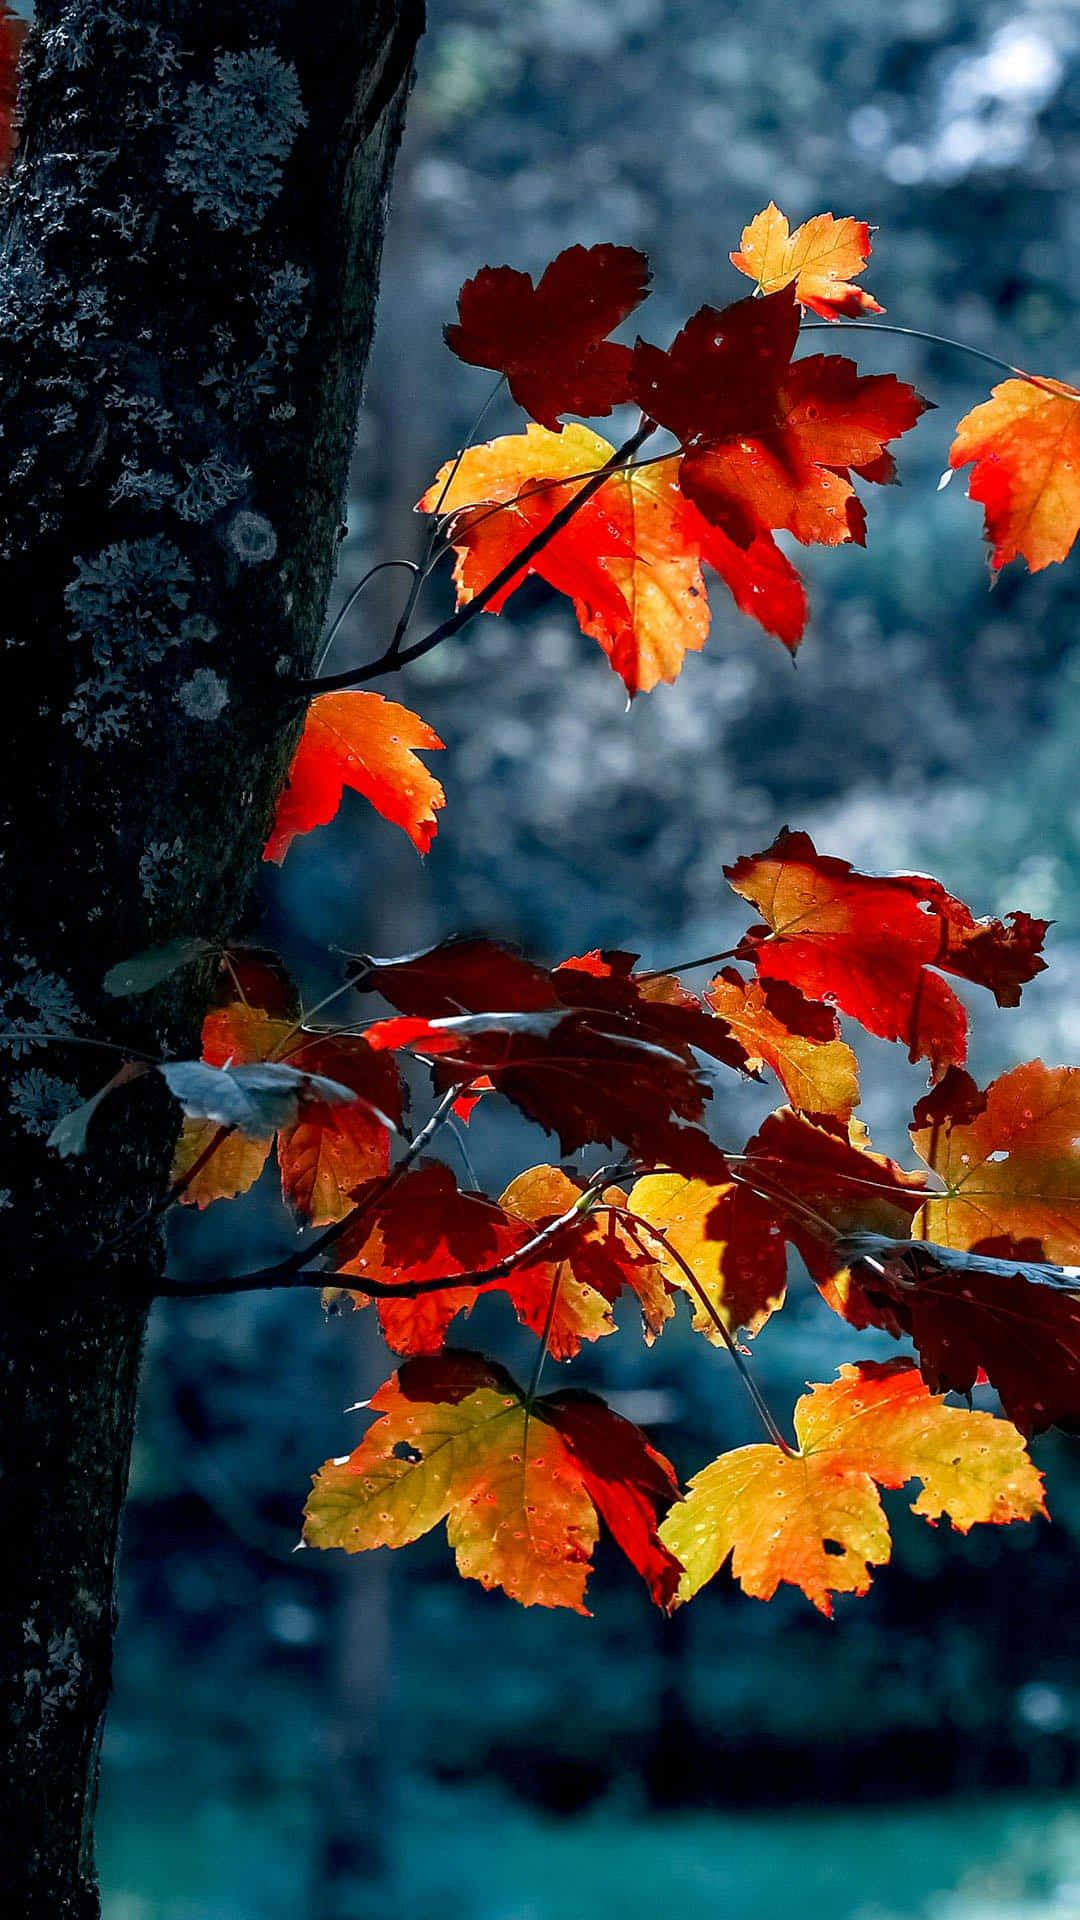 Feel the Magic of Autumn Season